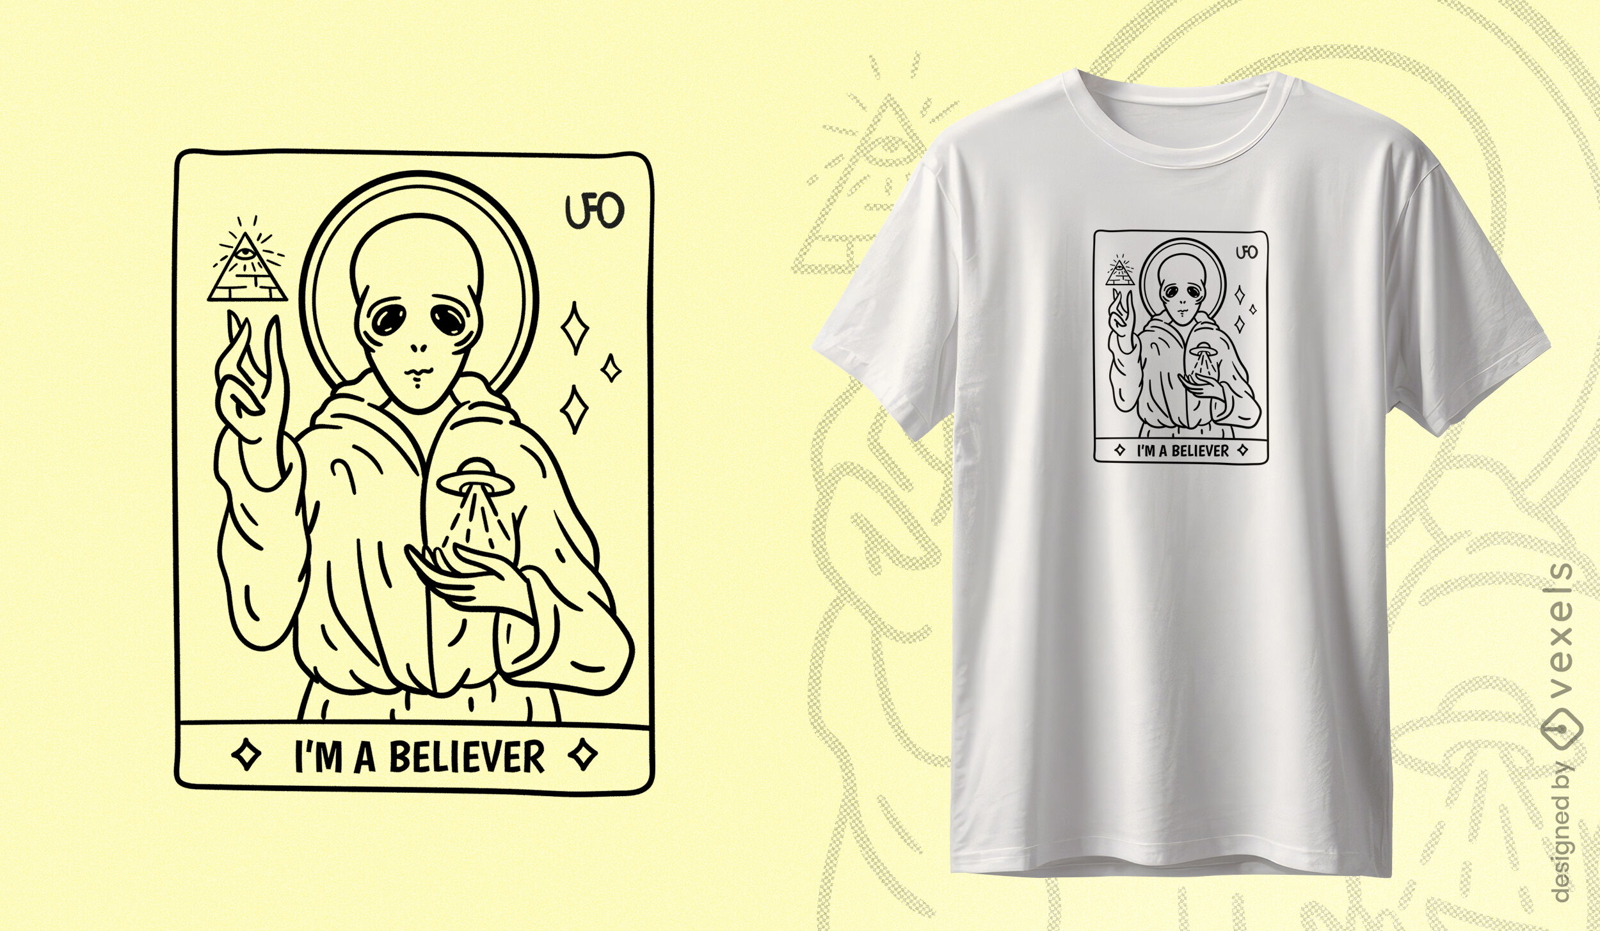 Diseño de camiseta de creyente alienígena.